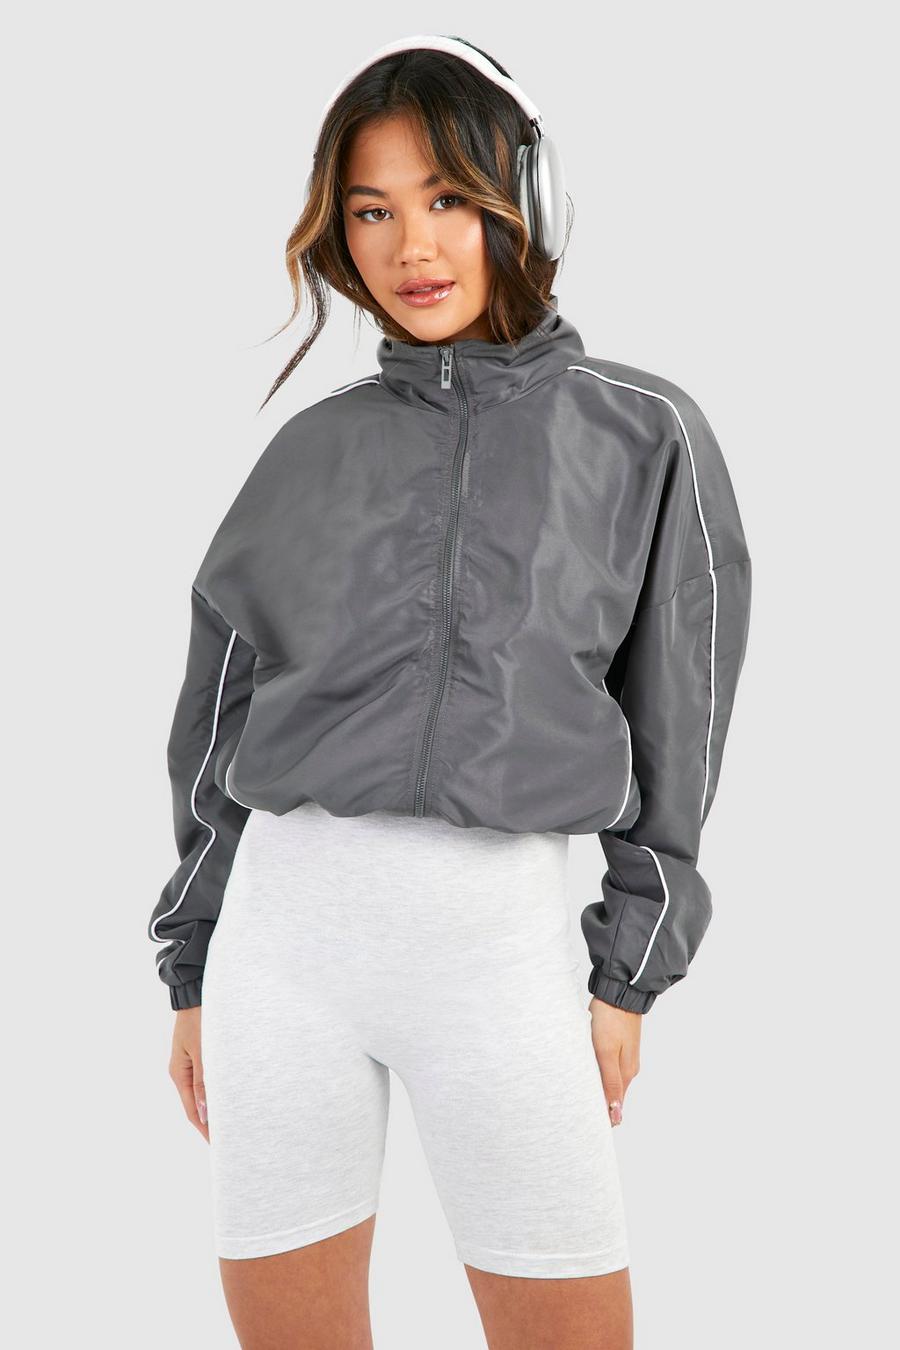 Grey category jackets use run